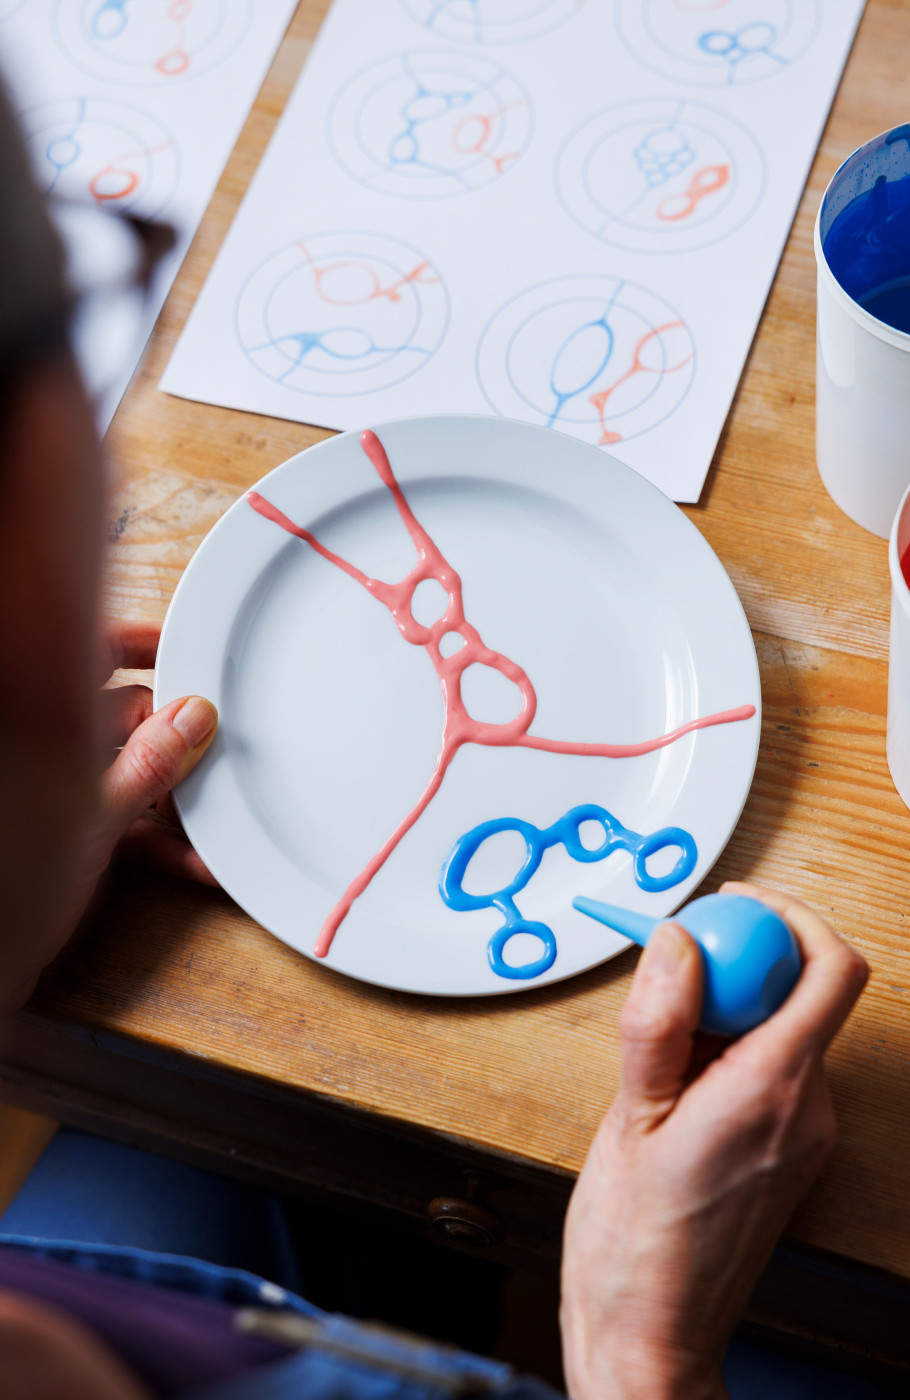 Keramikkünstlerin verziert einen Teller nach einer vor ihr liegenden Skizze